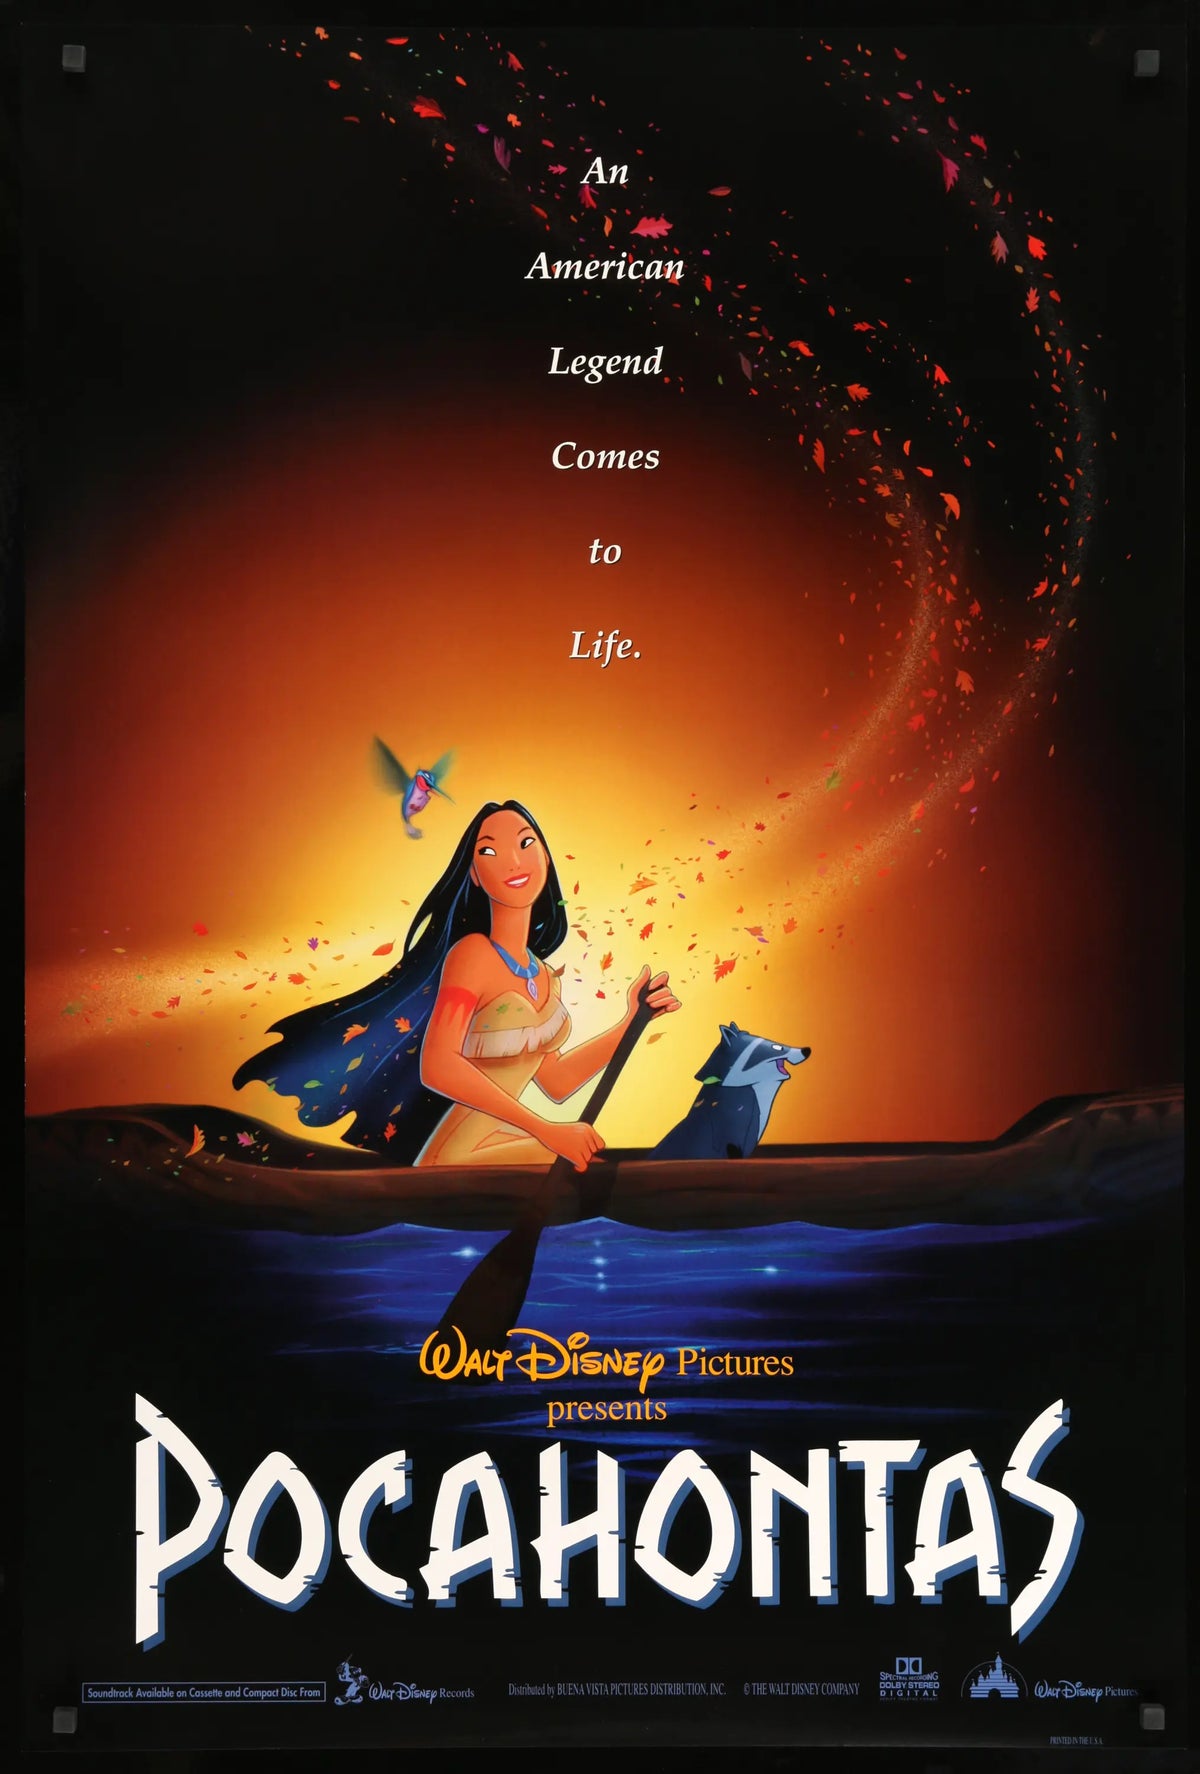 Pocahontas (1995) original movie poster for sale at Original Film Art